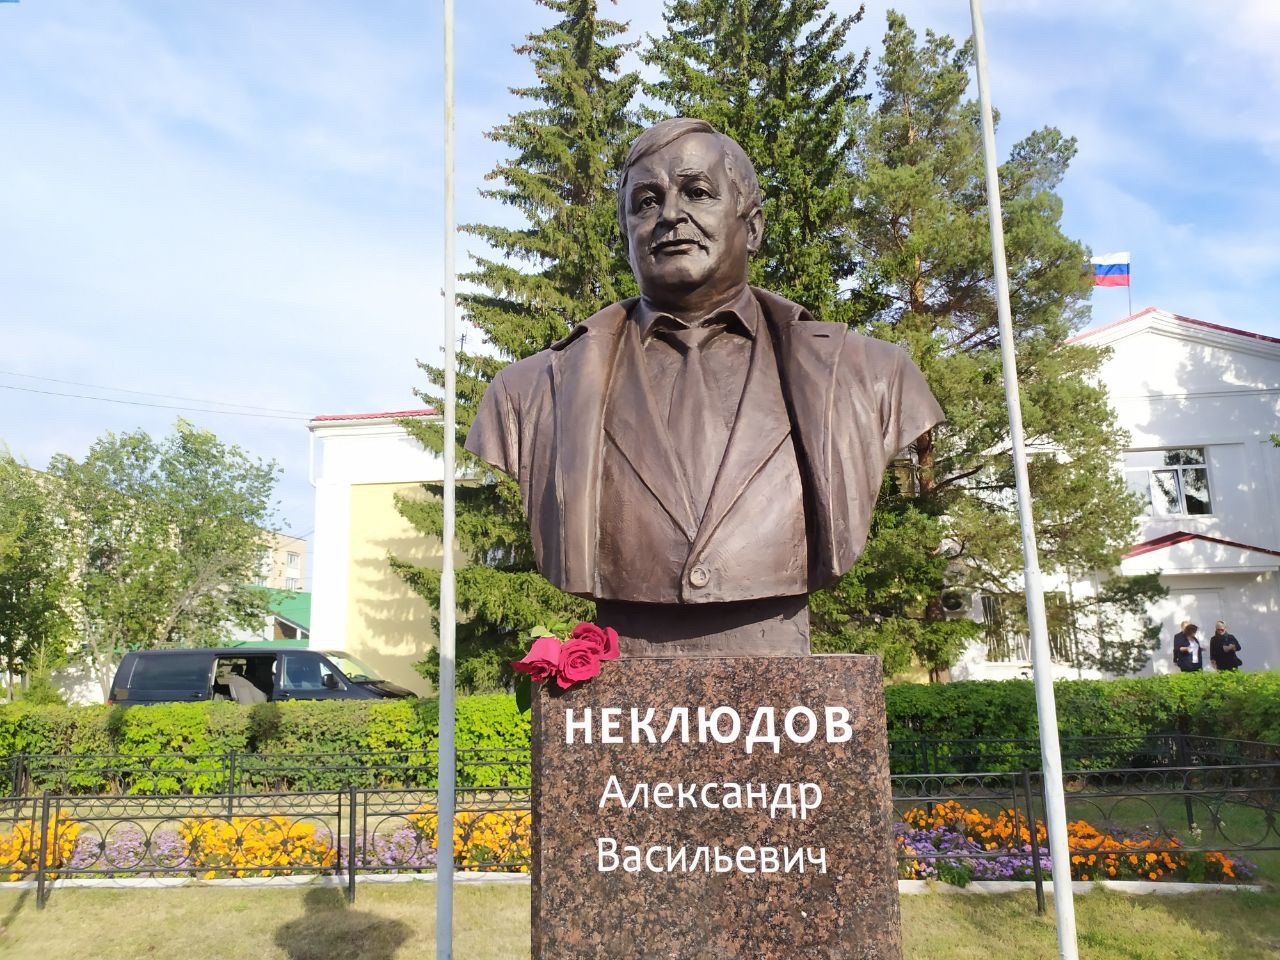 Памятник "народному" руководителю Александру Неклюдову открыли в Пласте